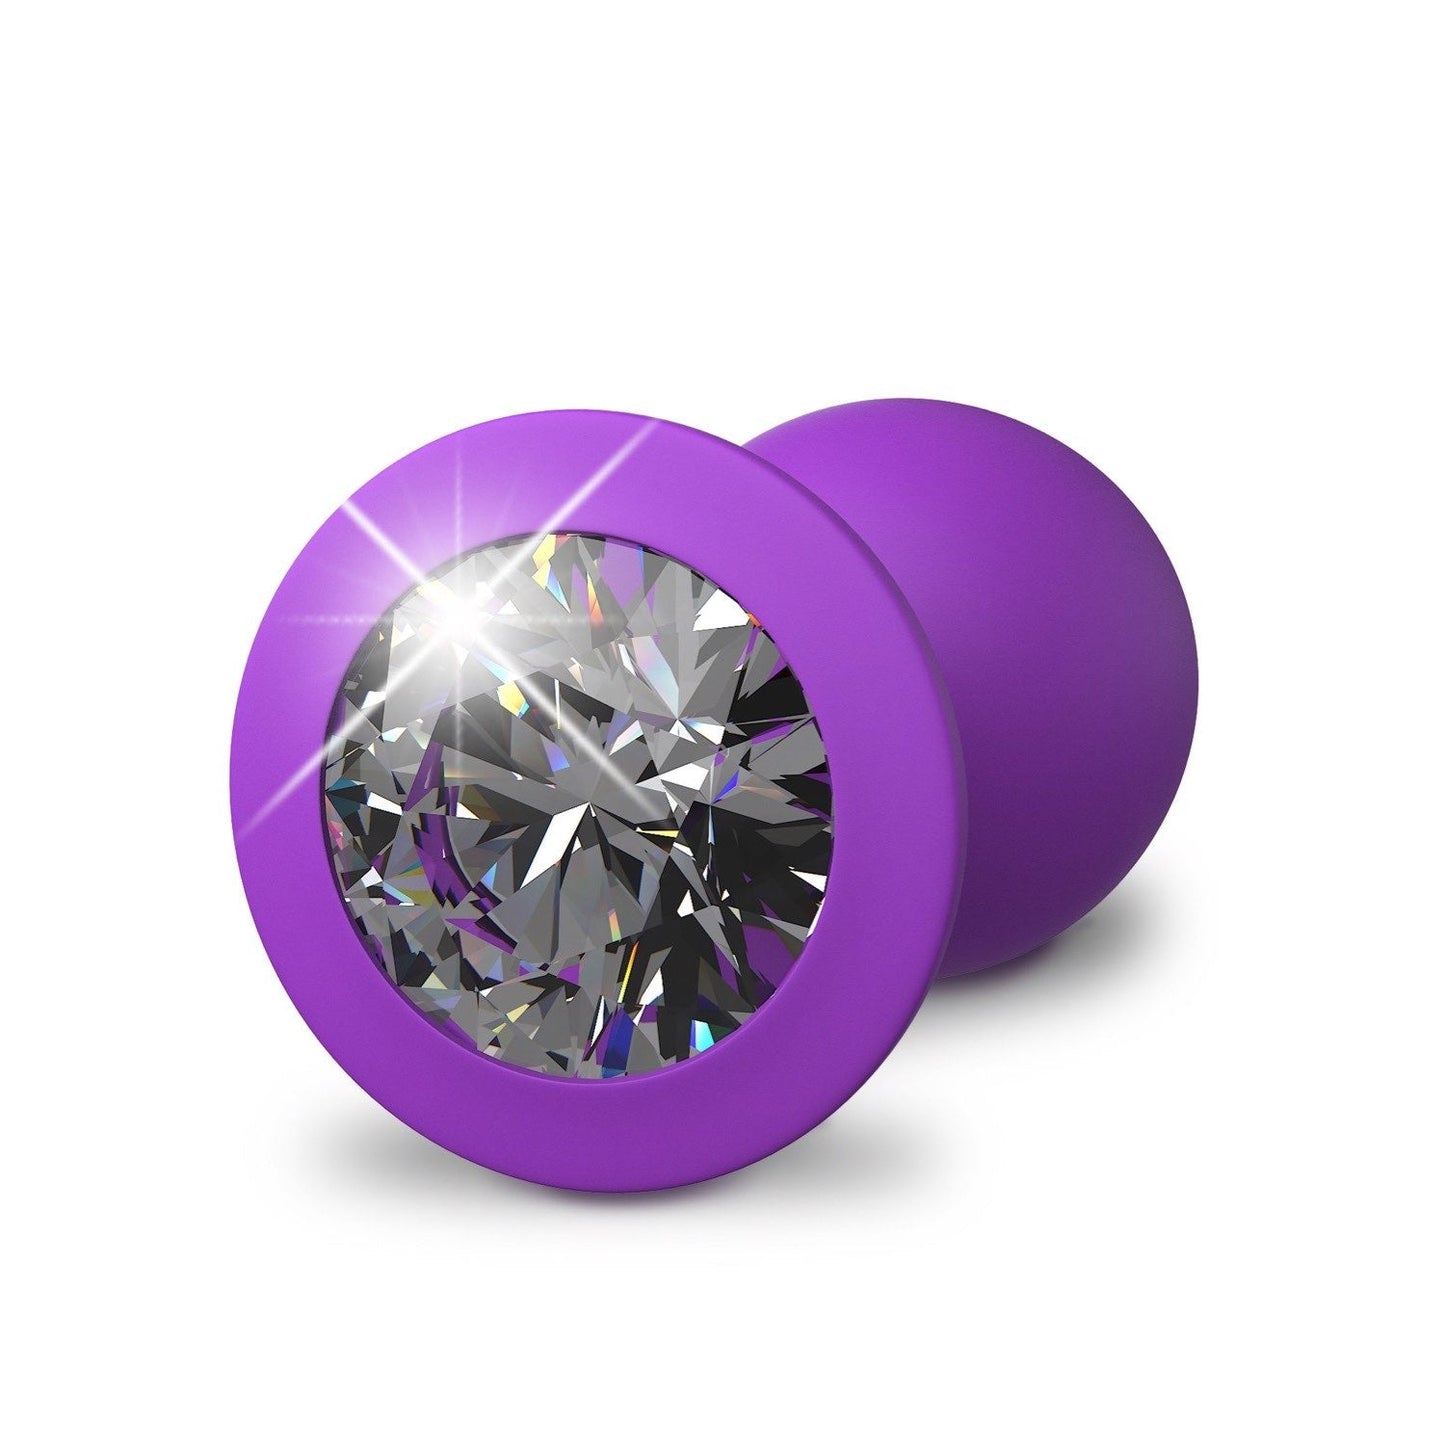 Little Gem 小插头 - 紫色 7.2 厘米对接插头，带宝石底座